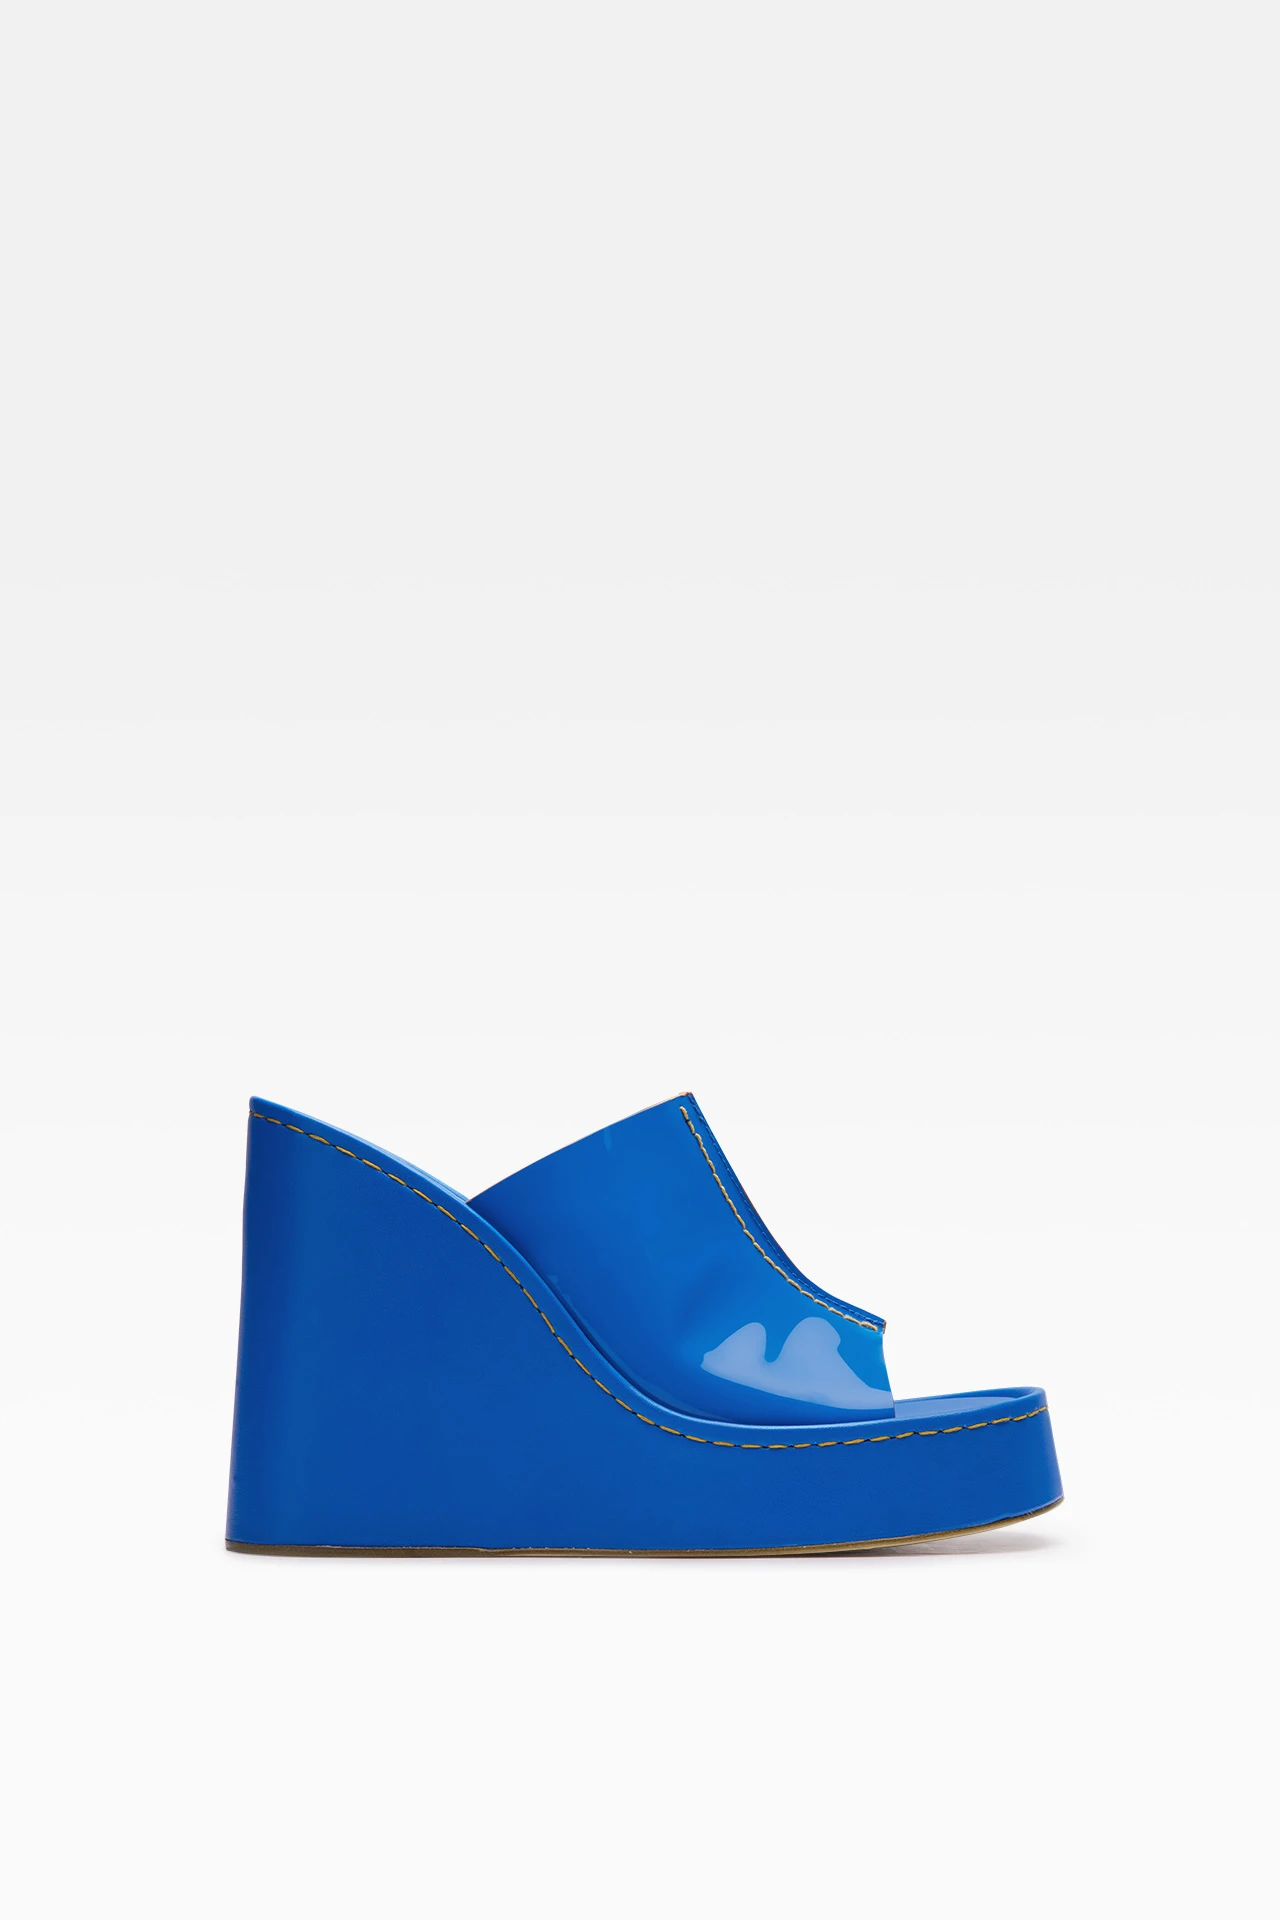 miista-rhea-blue-sandals-1